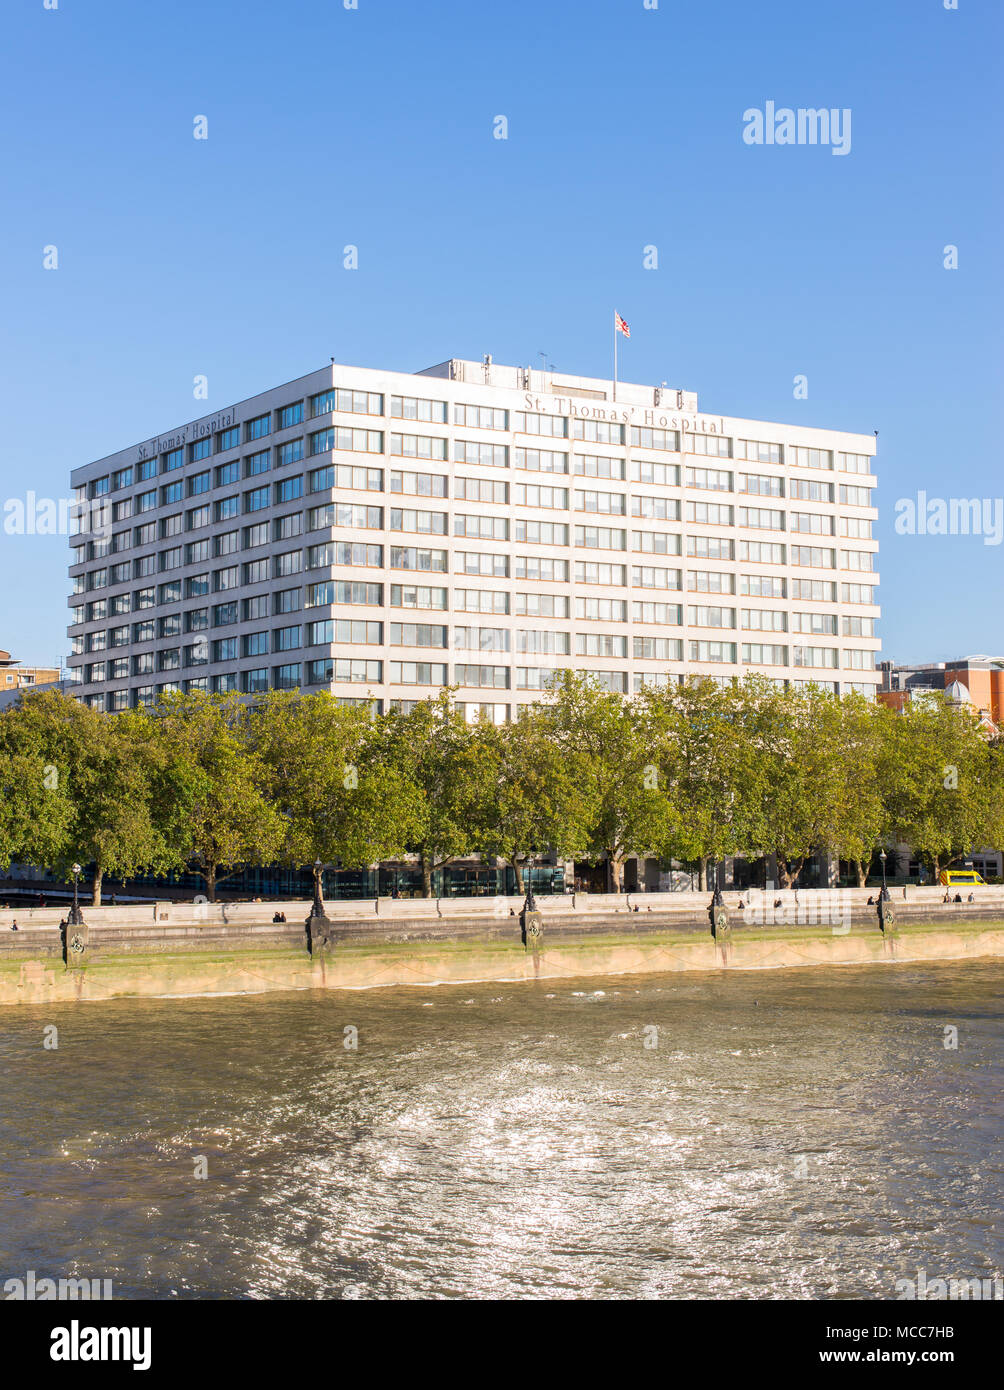 St Thomas' Ospedale sulle rive del fiume Tamigi è un grande insegnamento di NHS Hospital di Londra, Inghilterra. Foto Stock